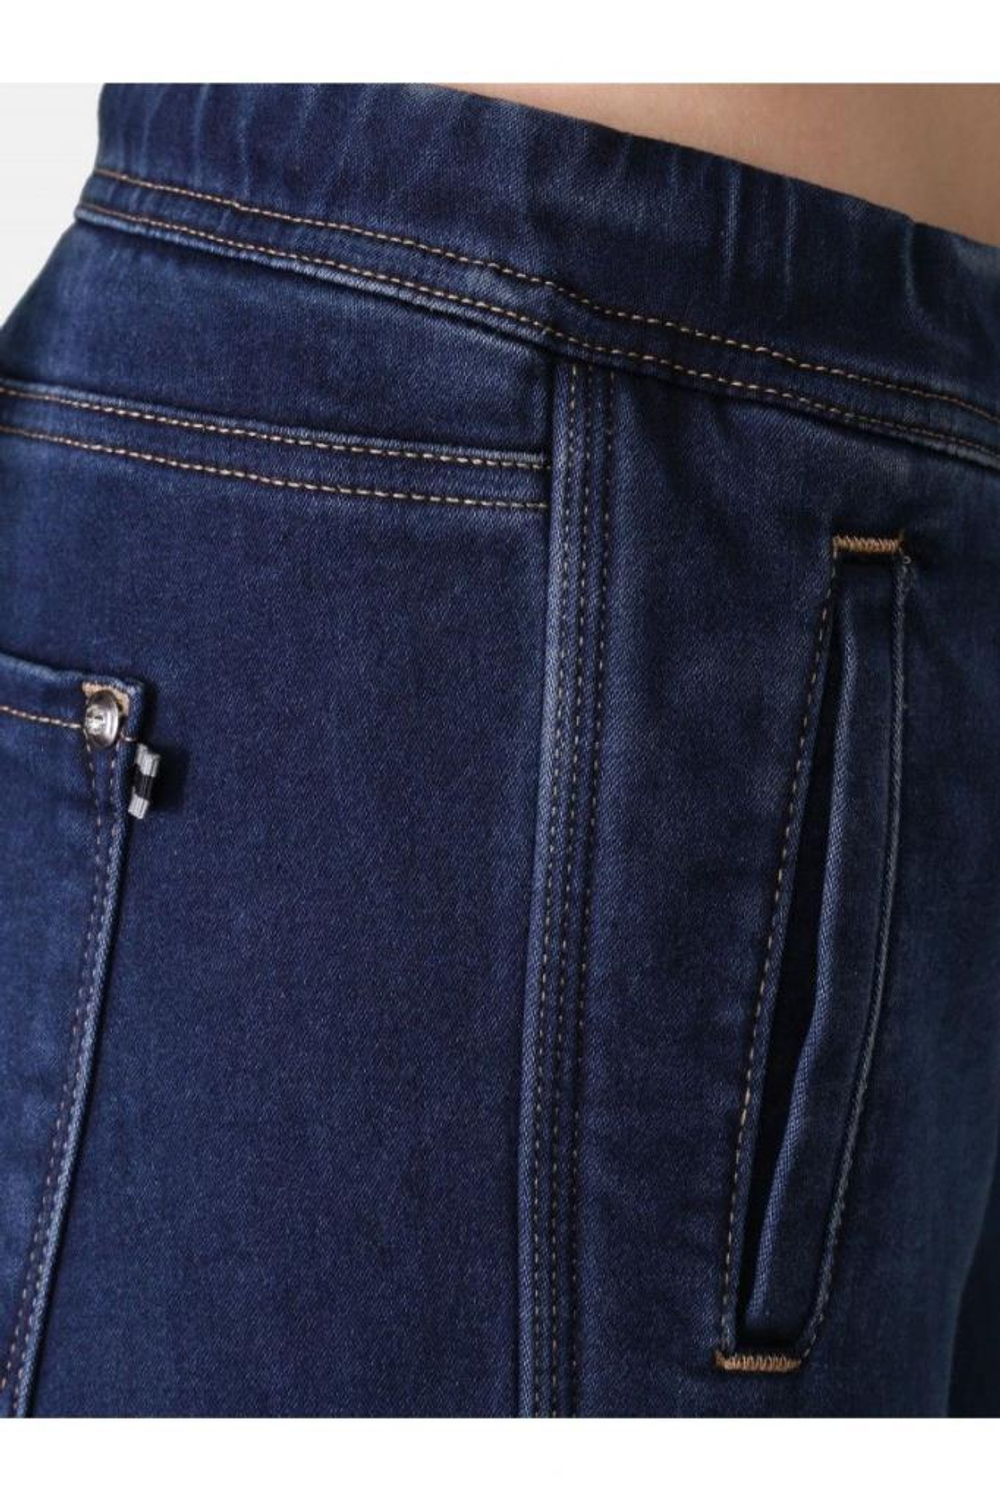 Брюки PPEP 854200-140-889 утепленные джинсы